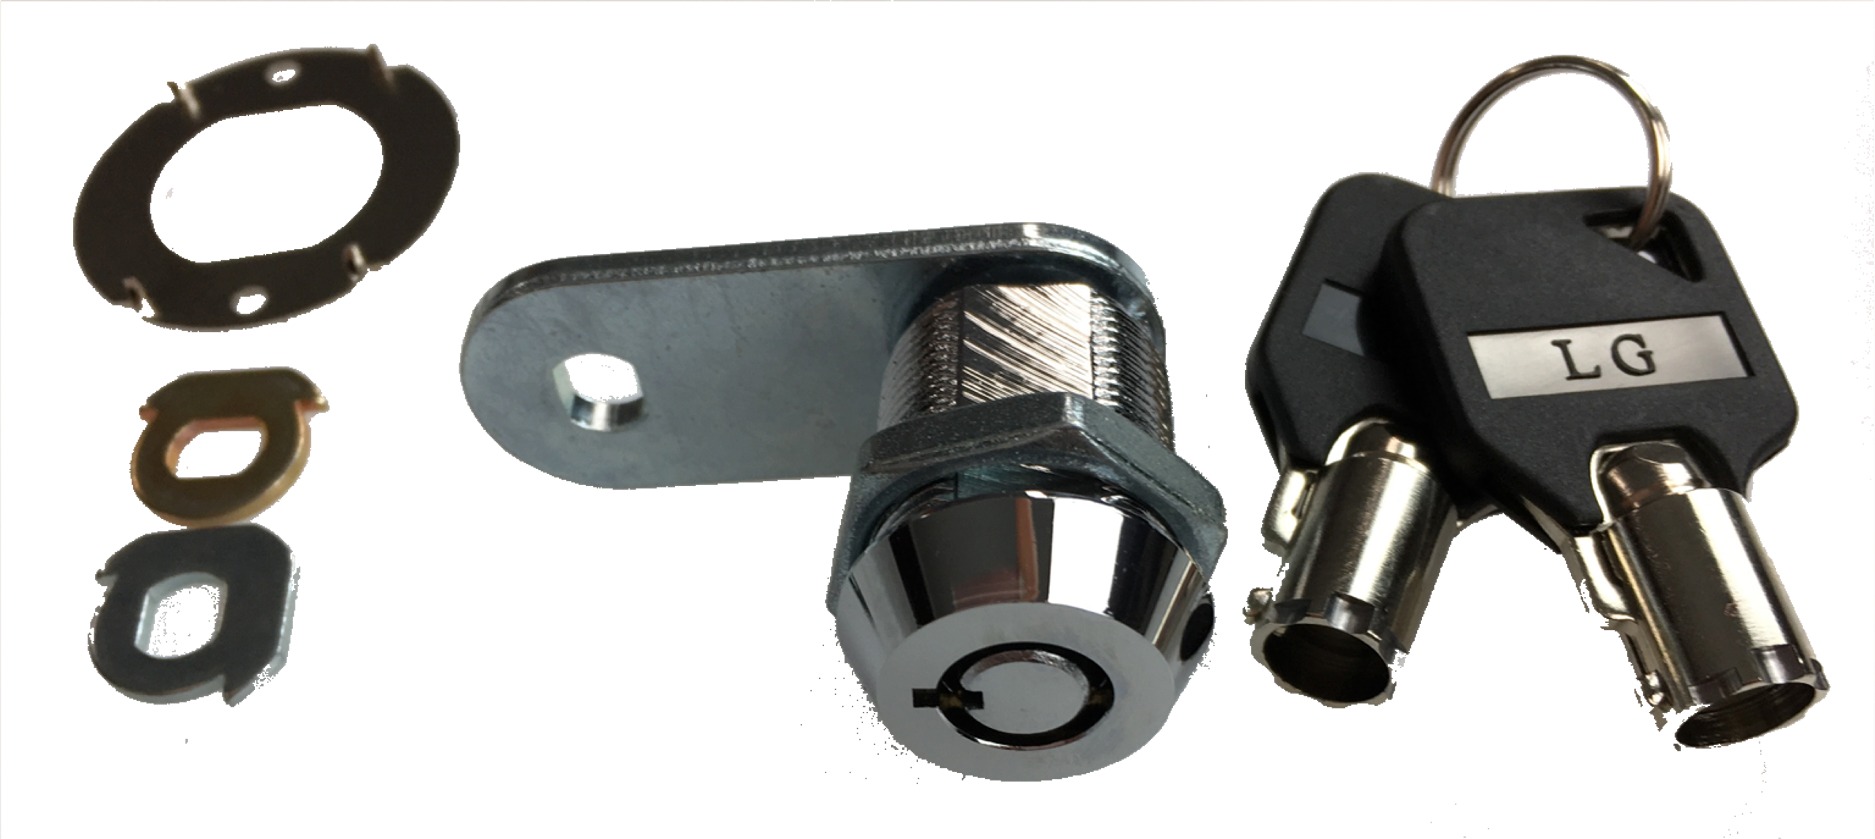 High Security Tubular Lock & Key Set (Long Cam)